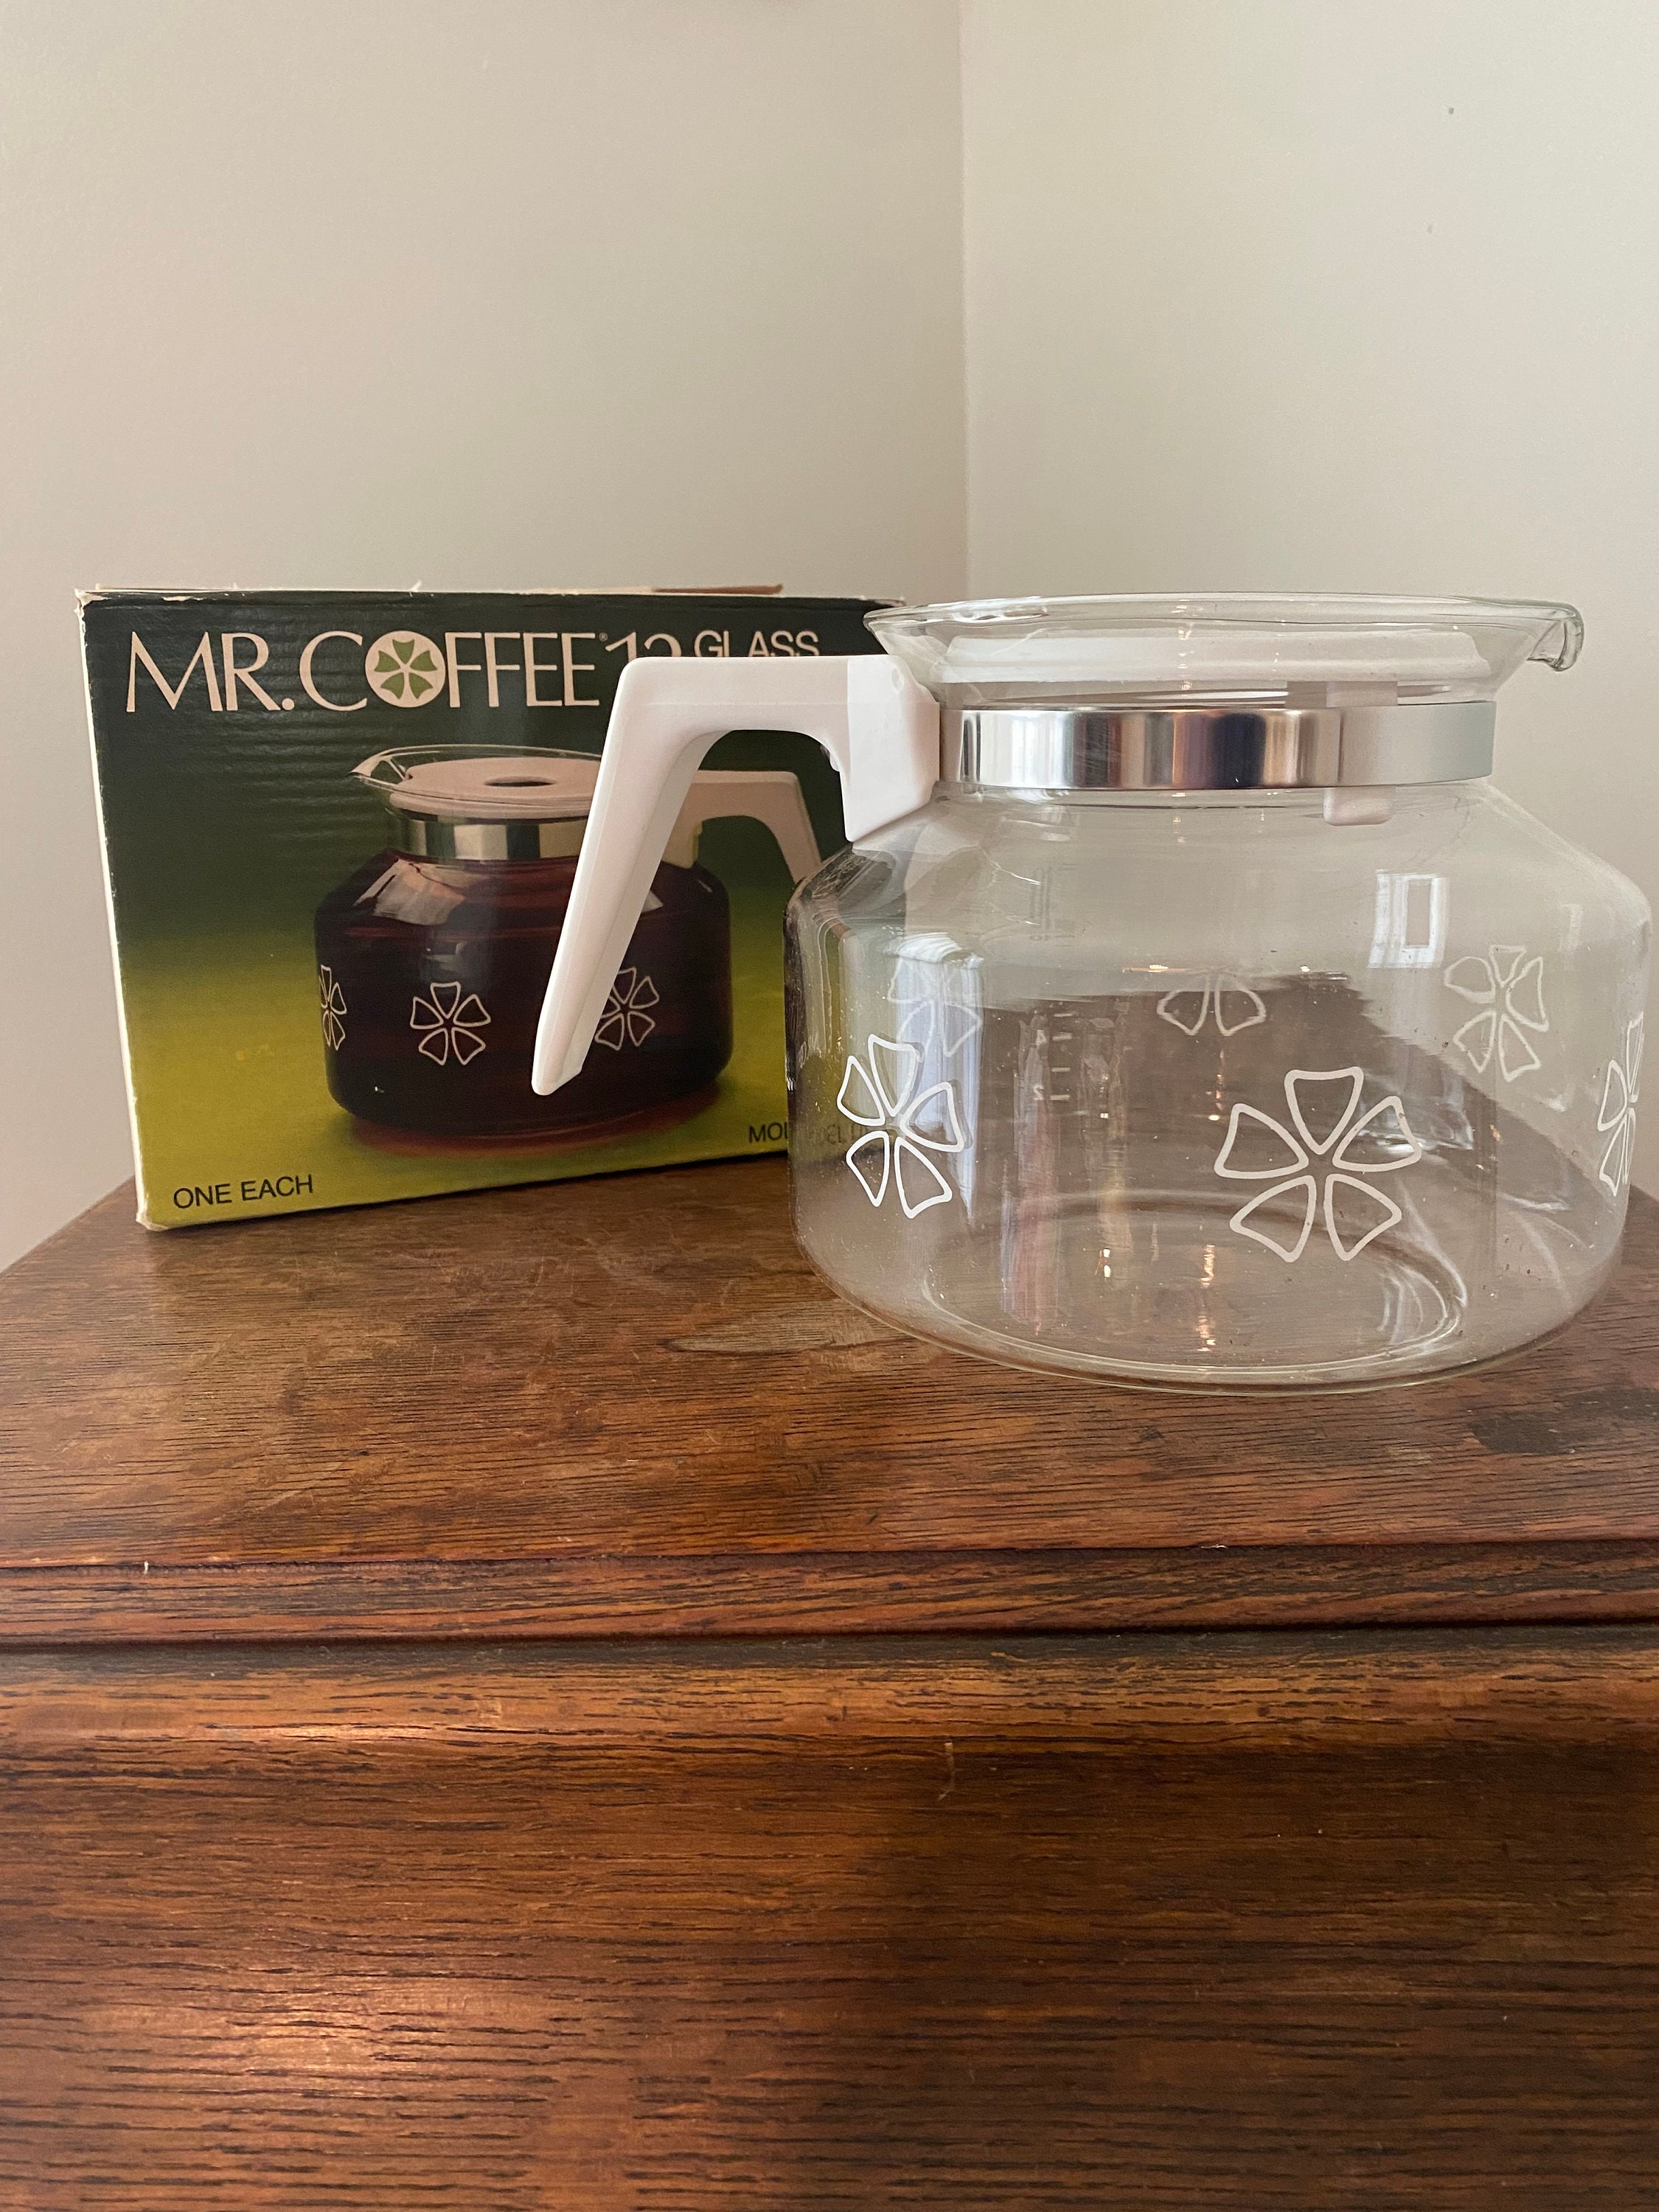 OGGI Linea Insulated Coffee Pot Carafe w/ Push Button Lid White in Original  Box